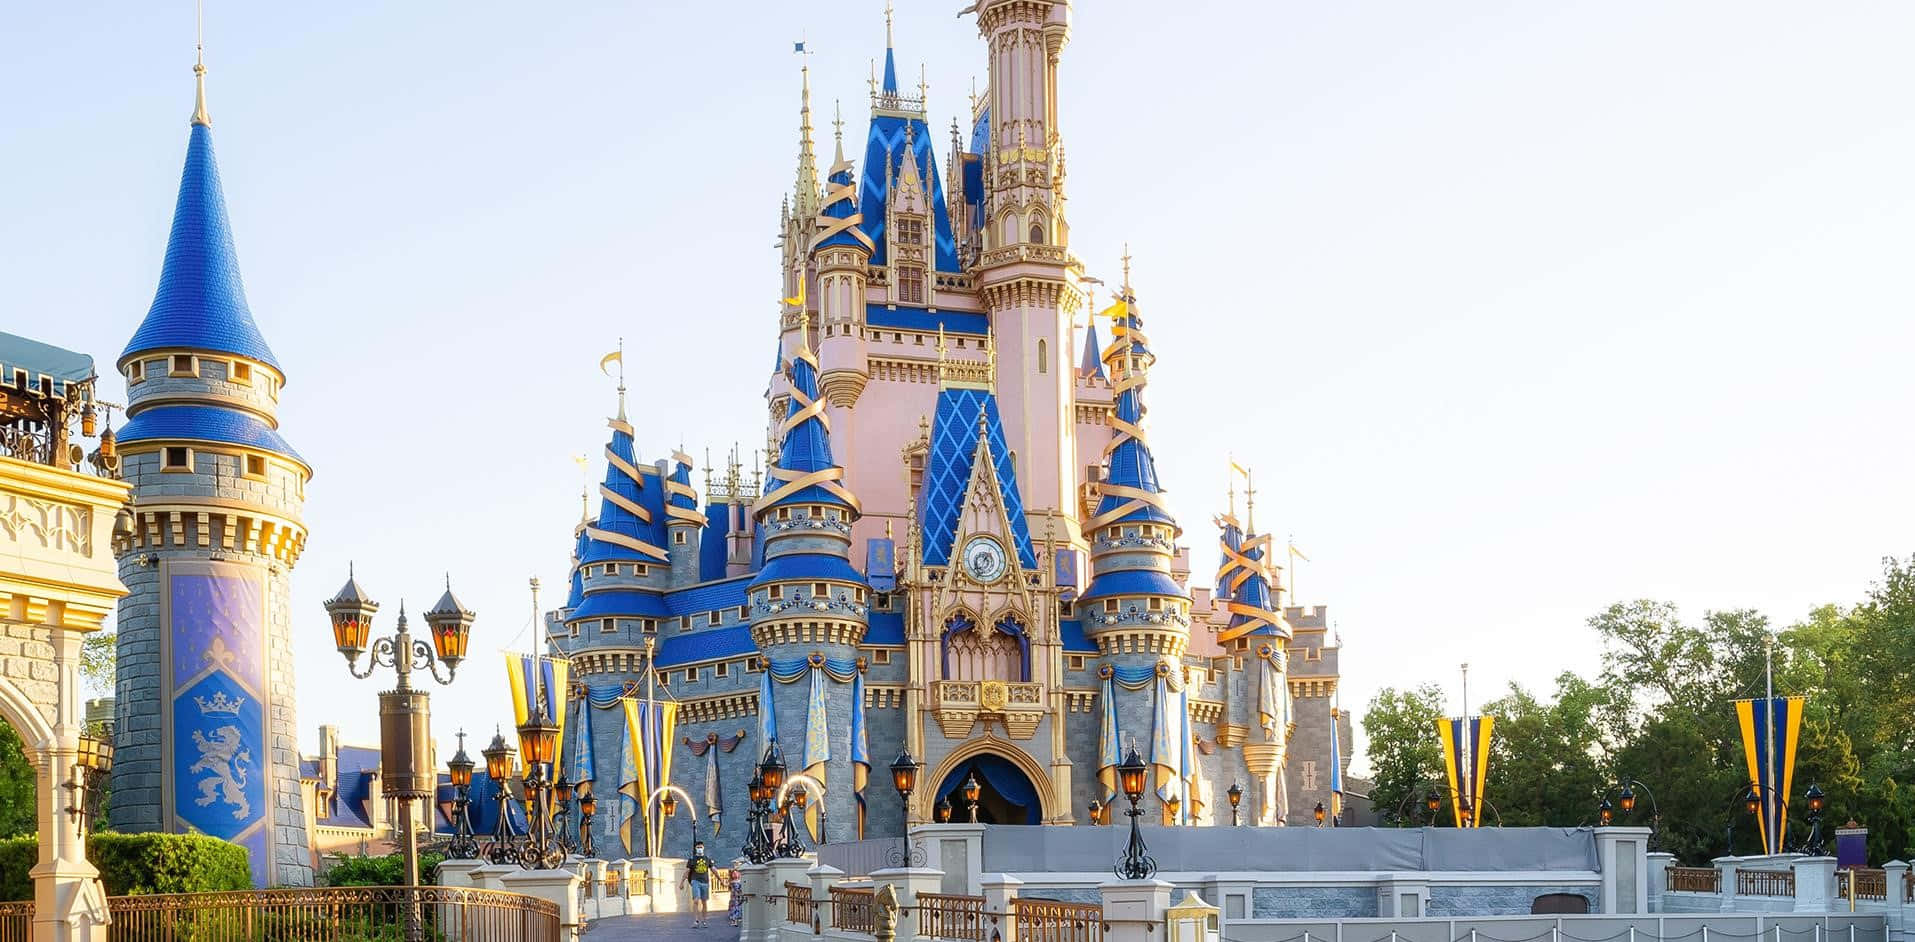 Cinderellaslottet På Disney World